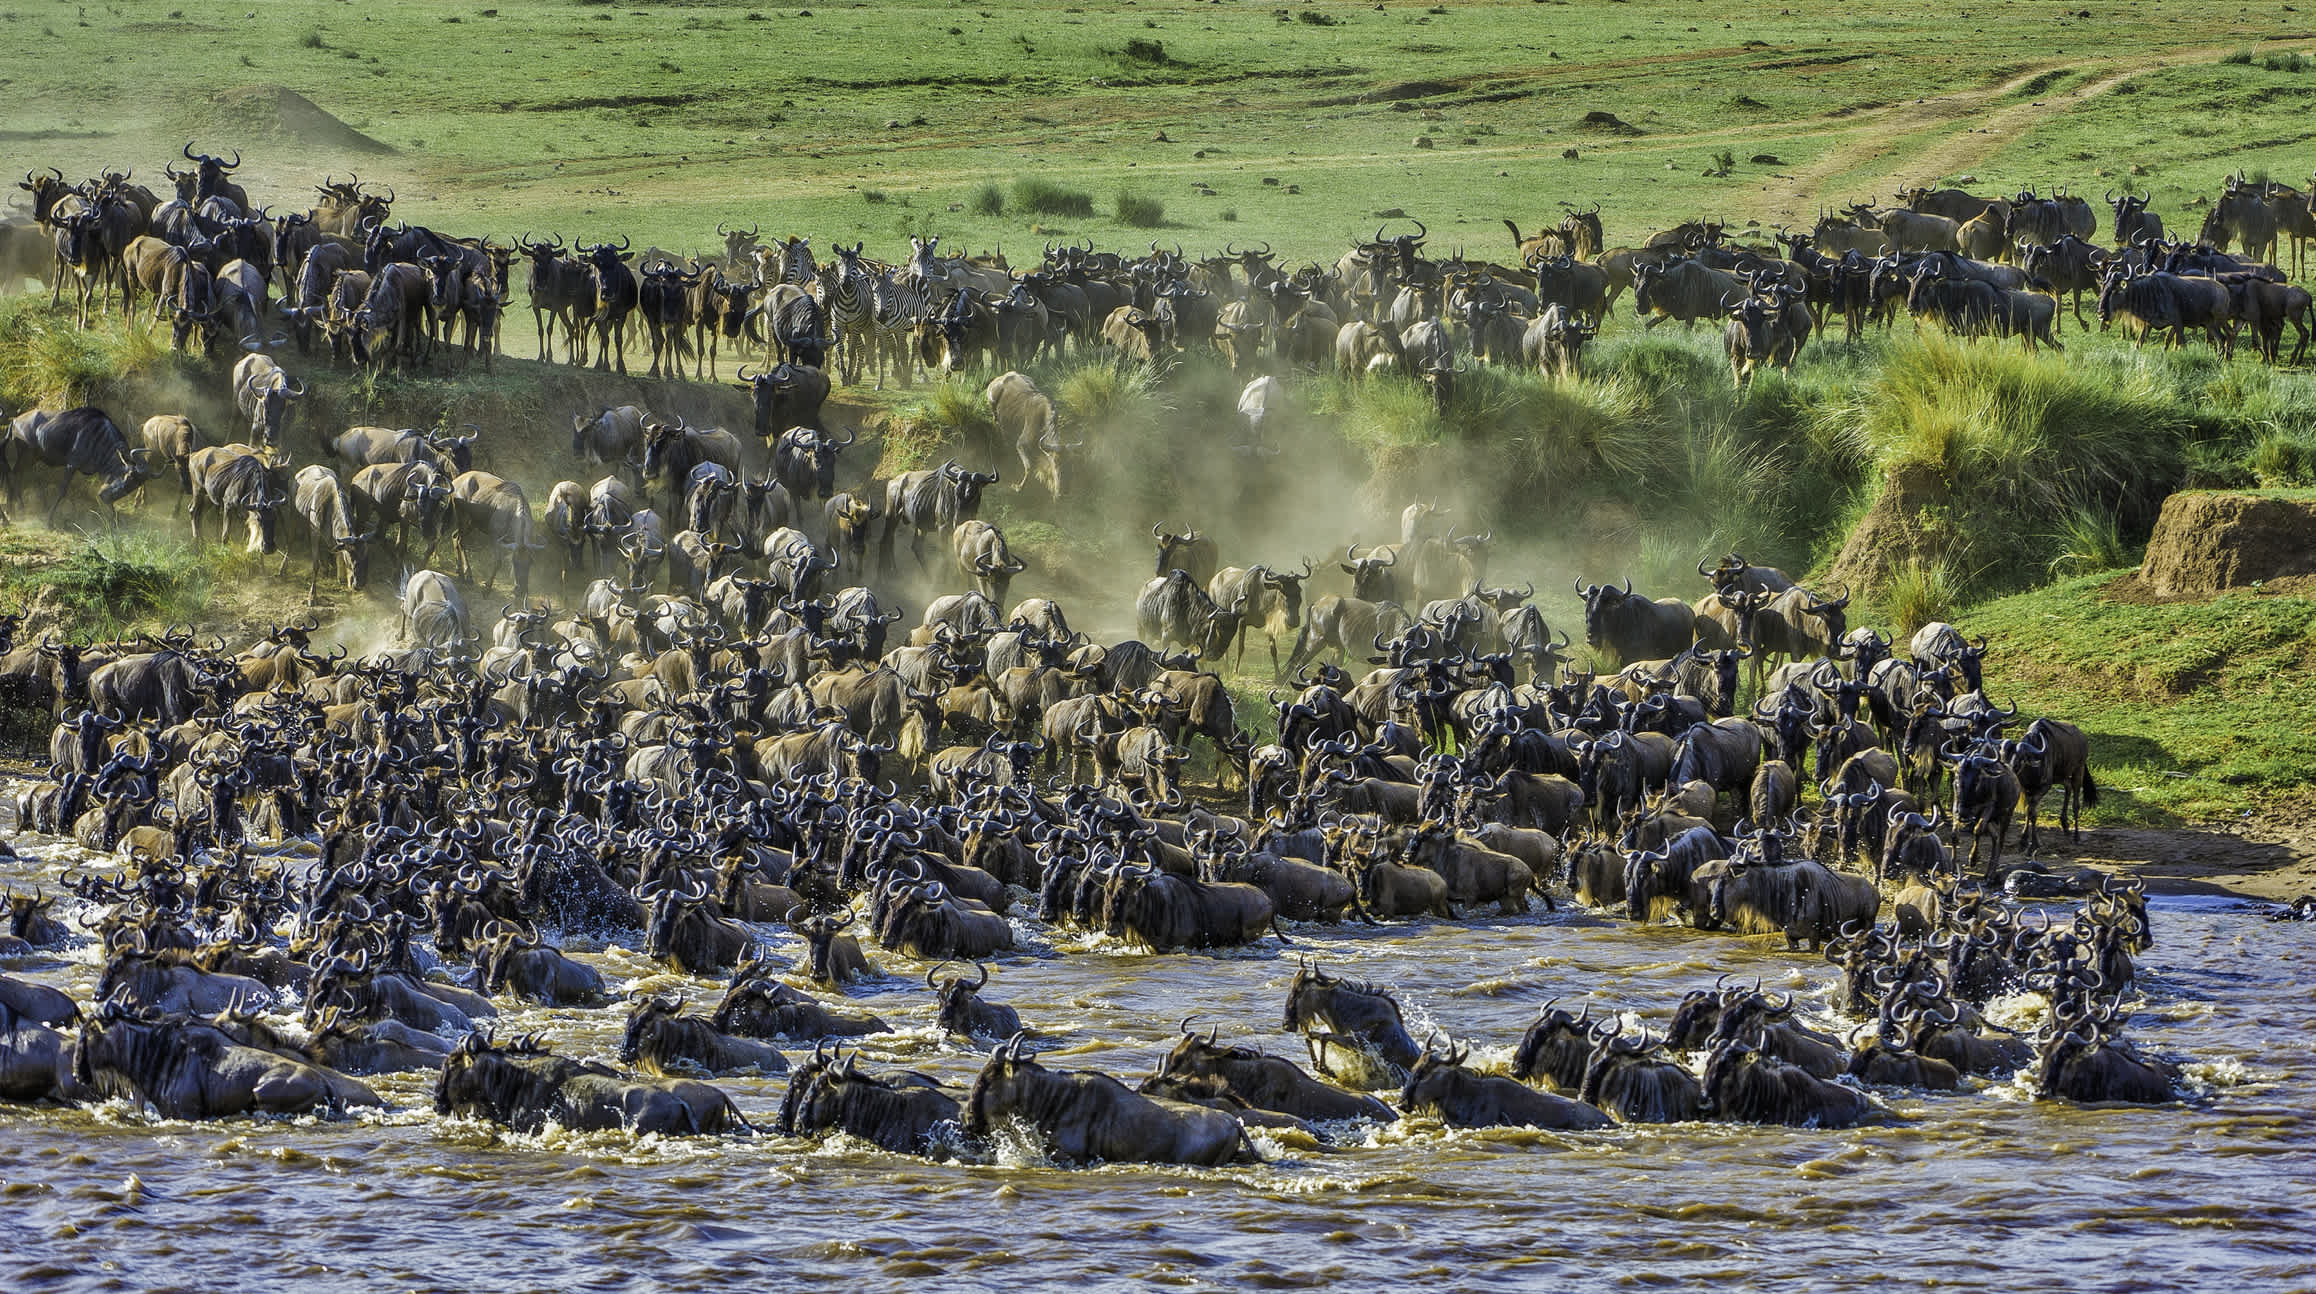 Gnous traversant la rivière Mara dans la réserve nationale de Masai Mara, Kenya.